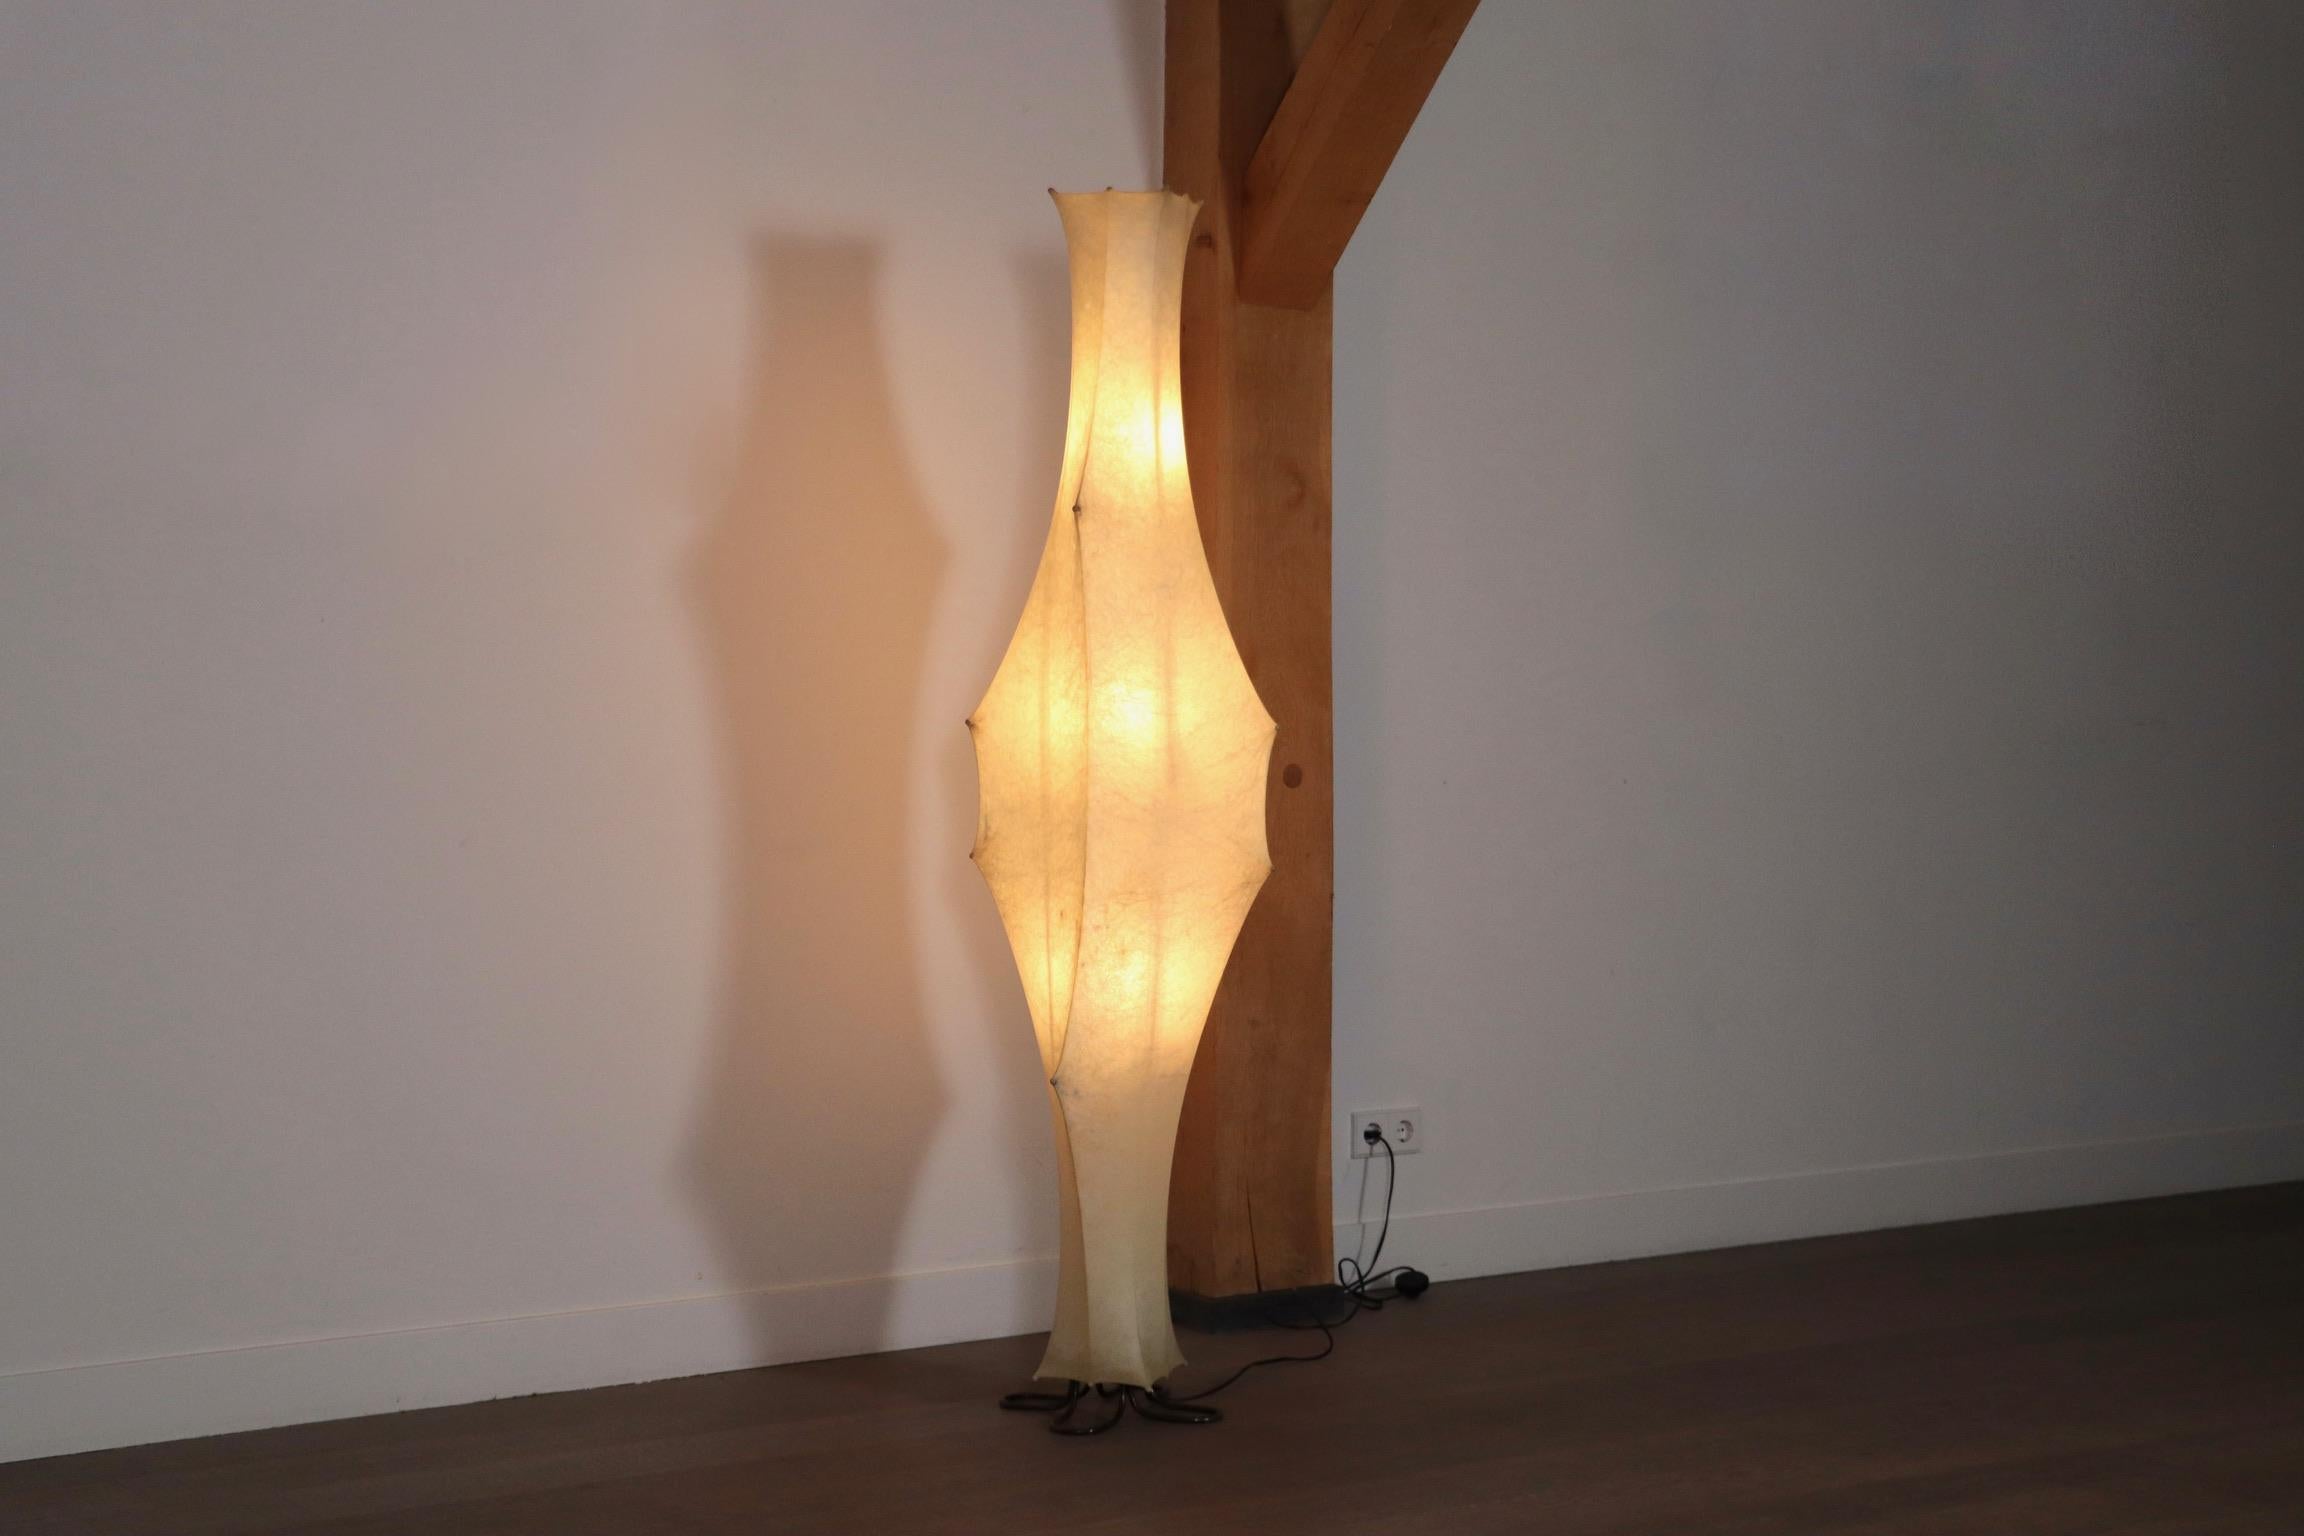 Lampadaire Flos Fantasma par Tobia Scarpa, Italie, années 1960.

Créé par le maître designer Tobia Scarpa, ce lampadaire se présente comme une œuvre d'art fonctionnelle. Sa silhouette saisissante brille d'une lumière diffuse qui éclaire sans